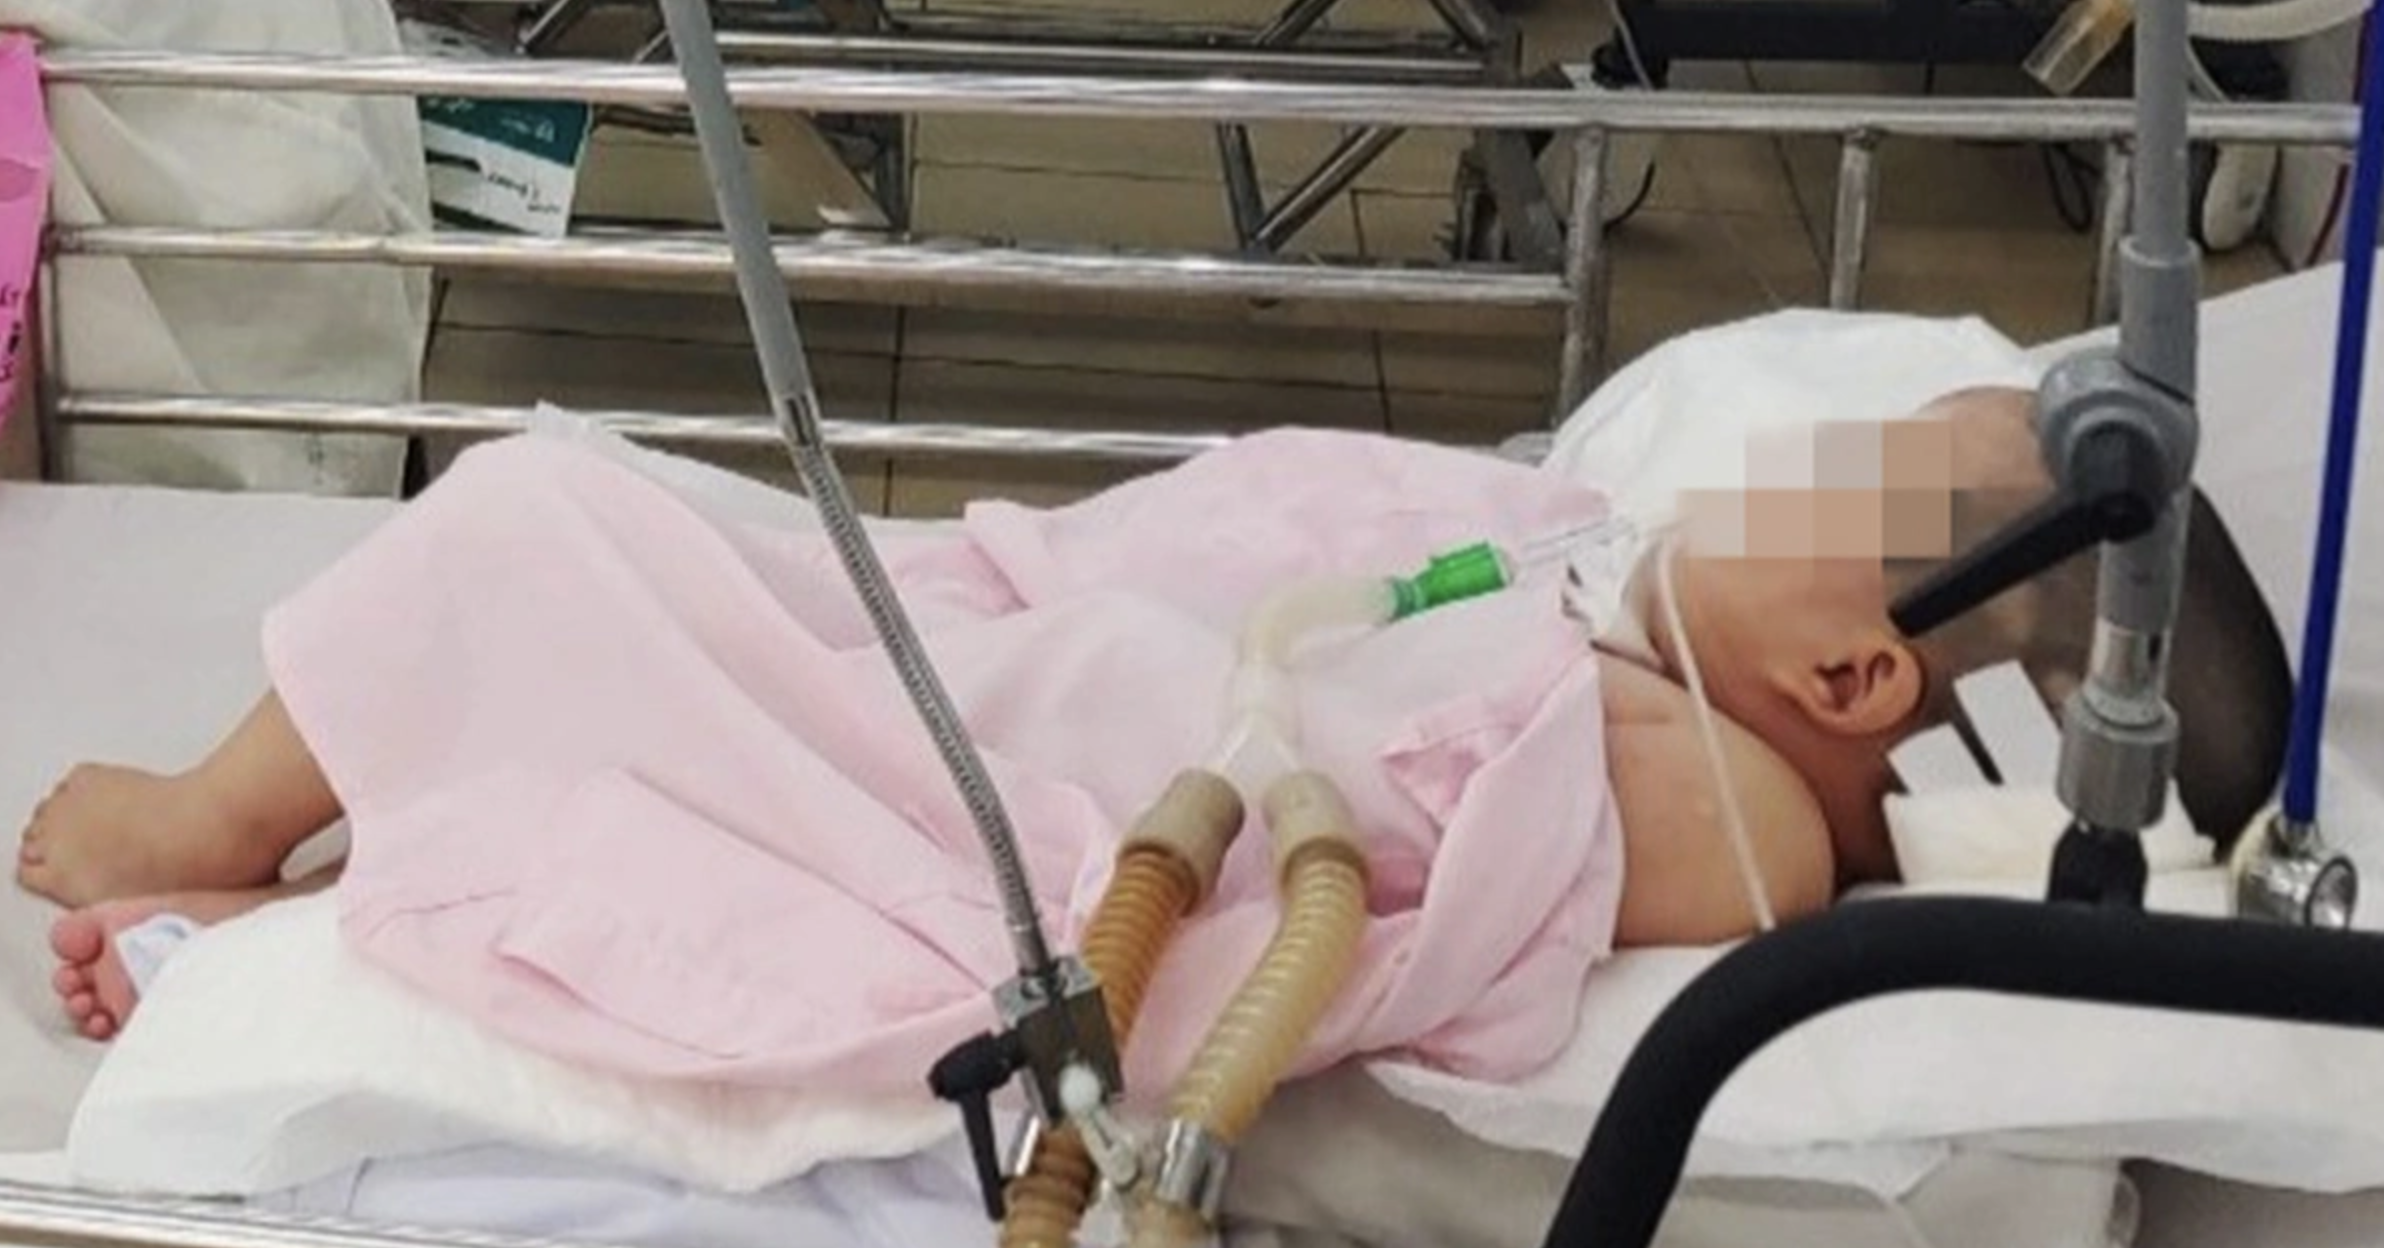 Hà Nội: Liên tiếp hai trẻ đột ngột tử vong tại nhà khi ngủ